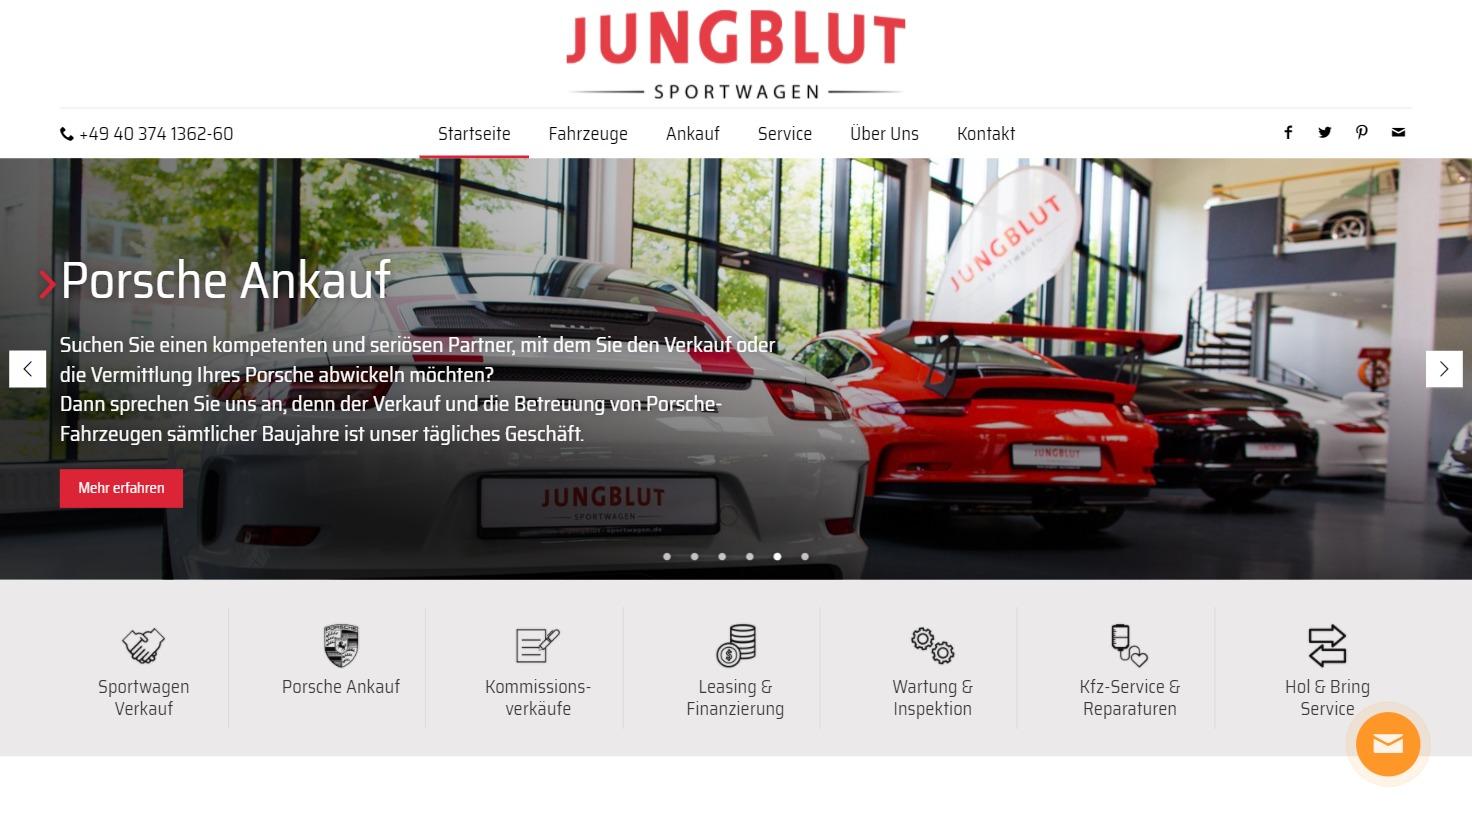 Jungblut Sportwagen - Ankauf und Verkauf von Porsche Gebrauchtwagen weltweit